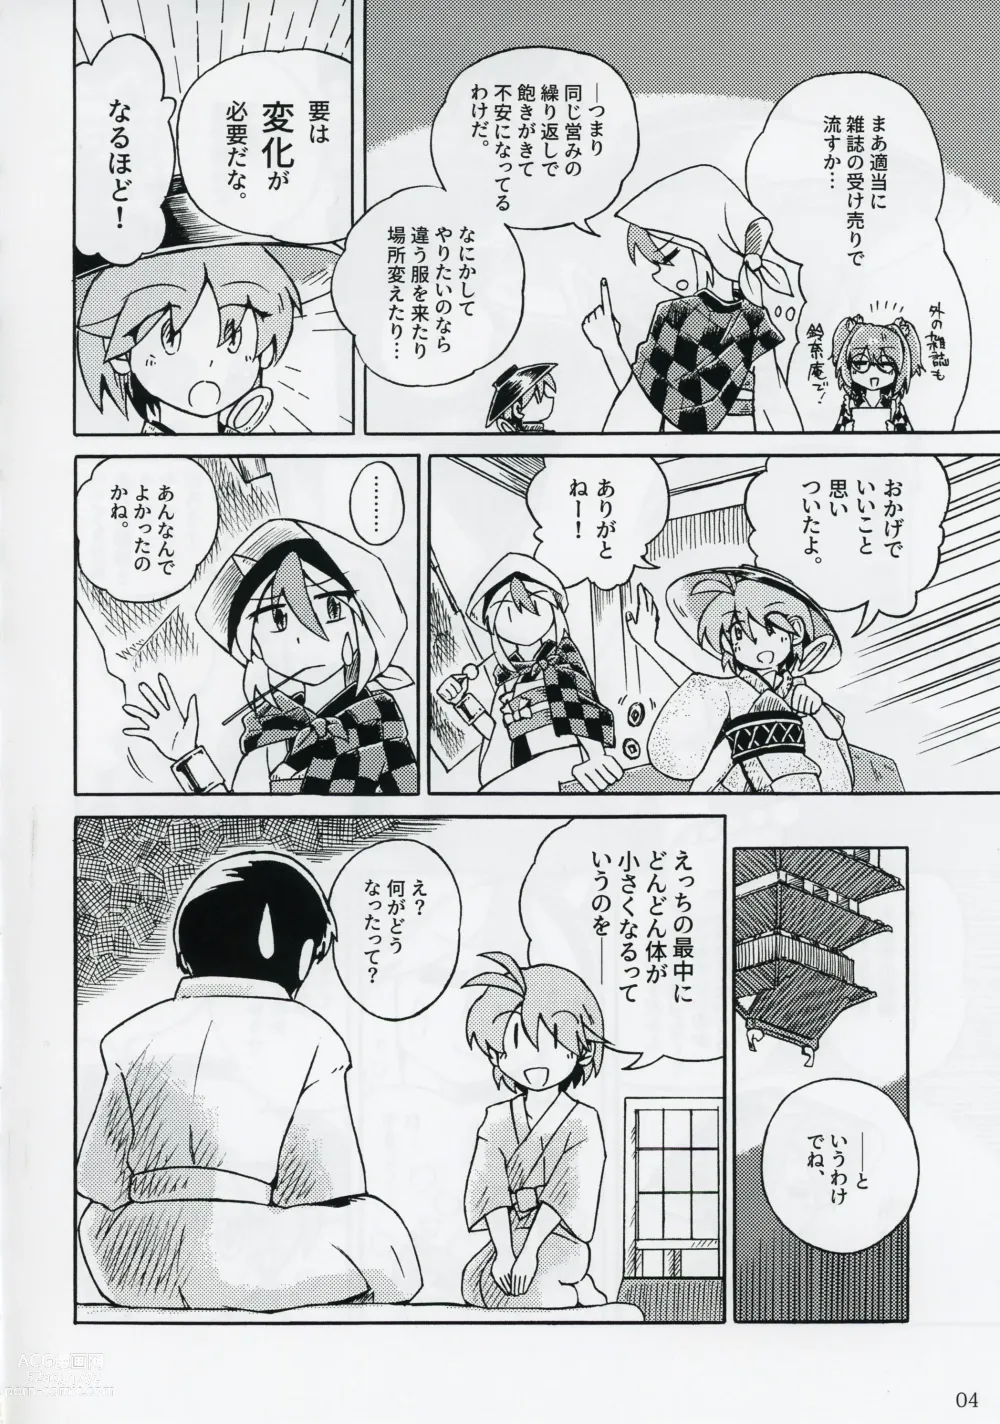 Page 5 of doujinshi Shinmyoumaru ga Chiisakuna Are